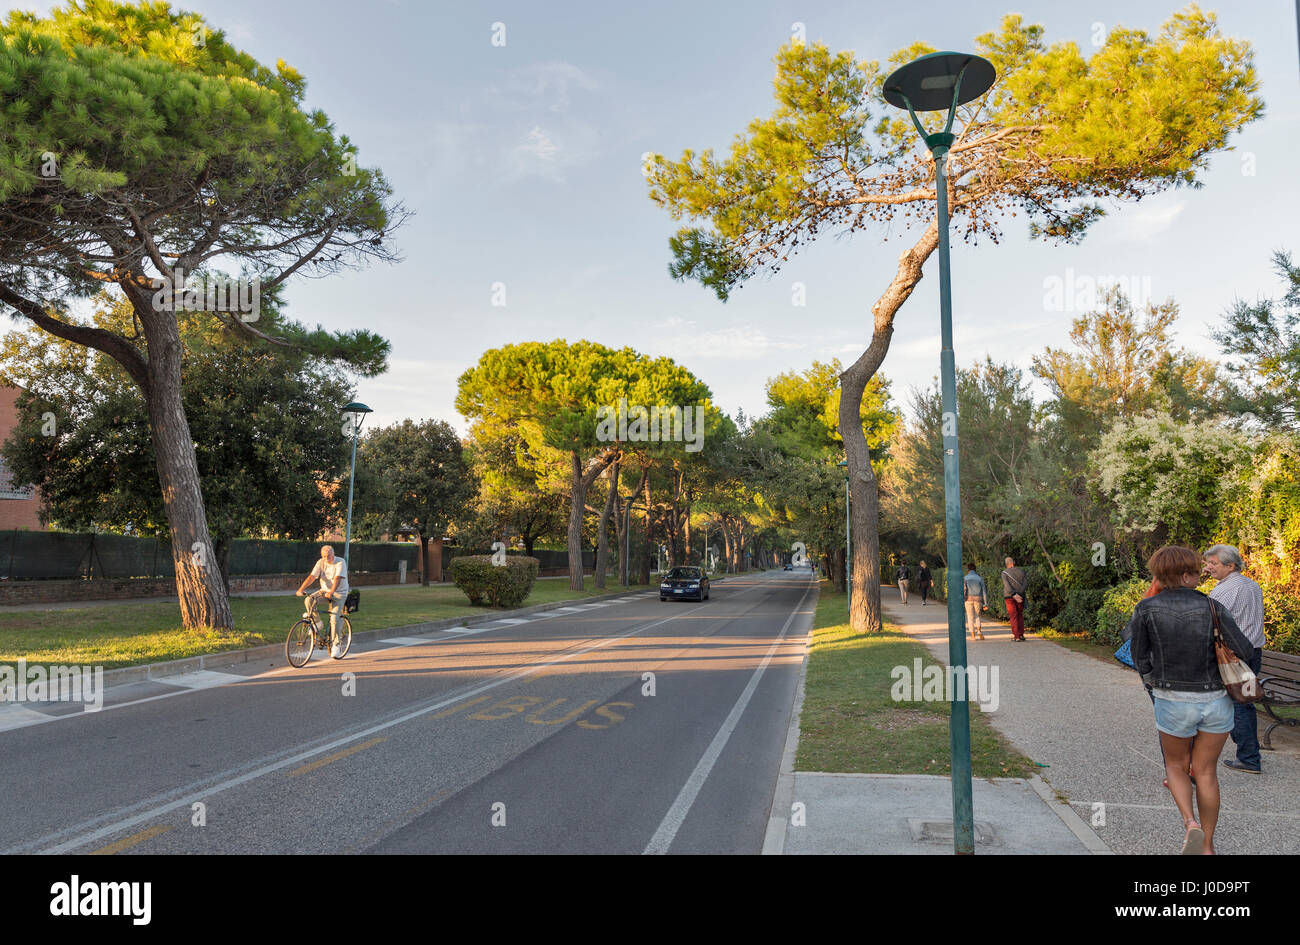 LIDO, ITALIE - 23 septembre 2016 : les personnes non reconnu promenade le long Lungomare Guglielmo Marconi rue de la mer au coucher du soleil. L'île du Lido est connue pour ses 11 km Banque D'Images